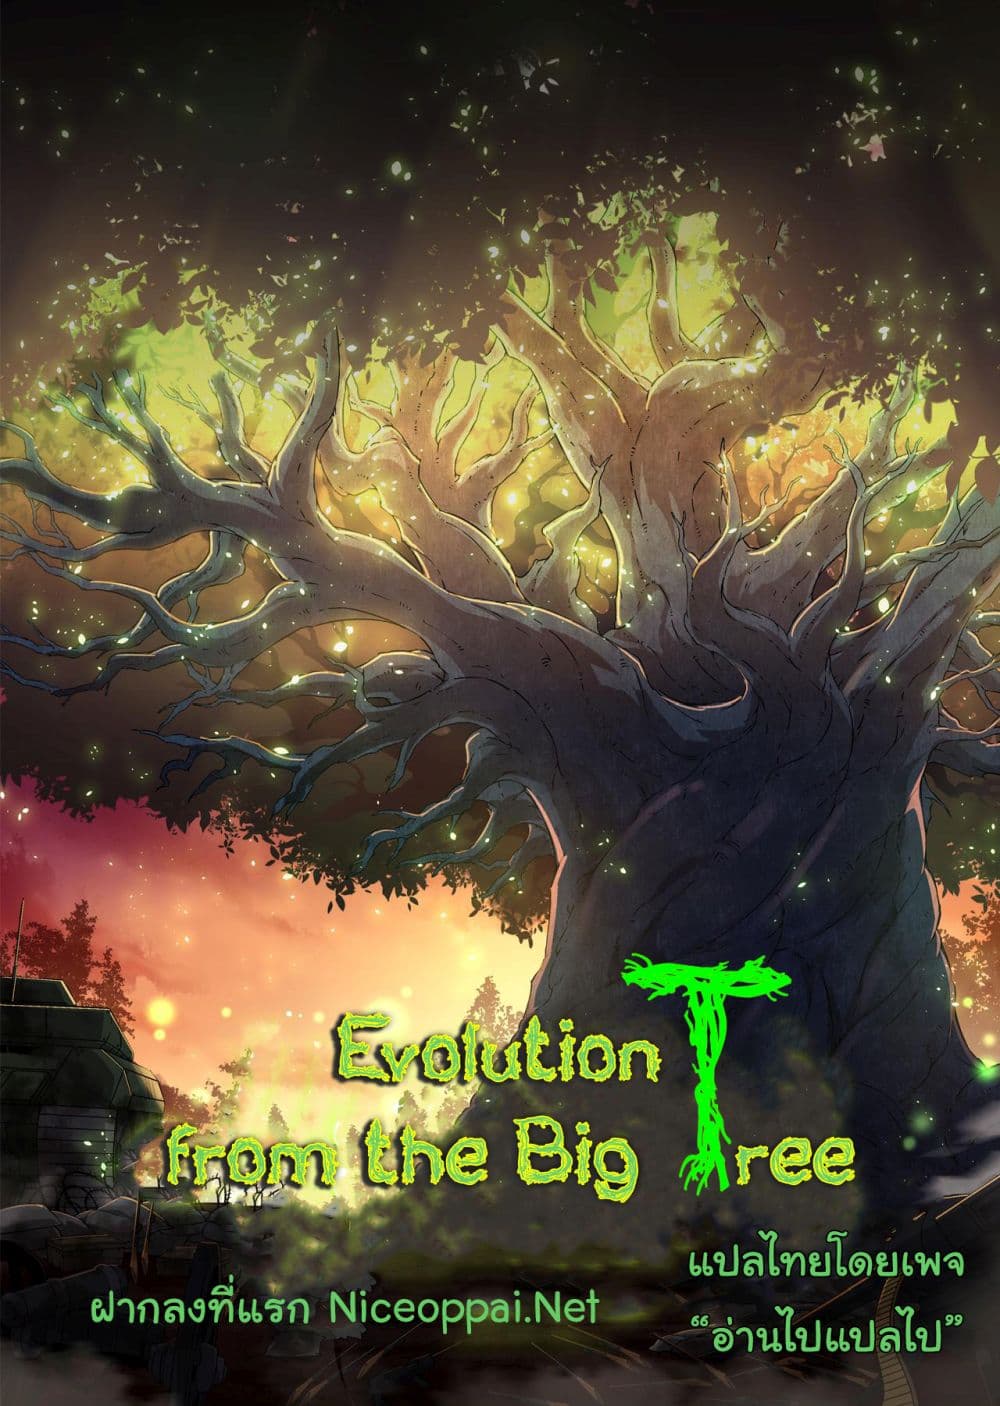 Evolution from the Big Tree Ã Â¸â€¢Ã Â¸Â­Ã Â¸â„¢Ã Â¸â€”Ã Â¸ÂµÃ Â¹Ë† 6 (1)